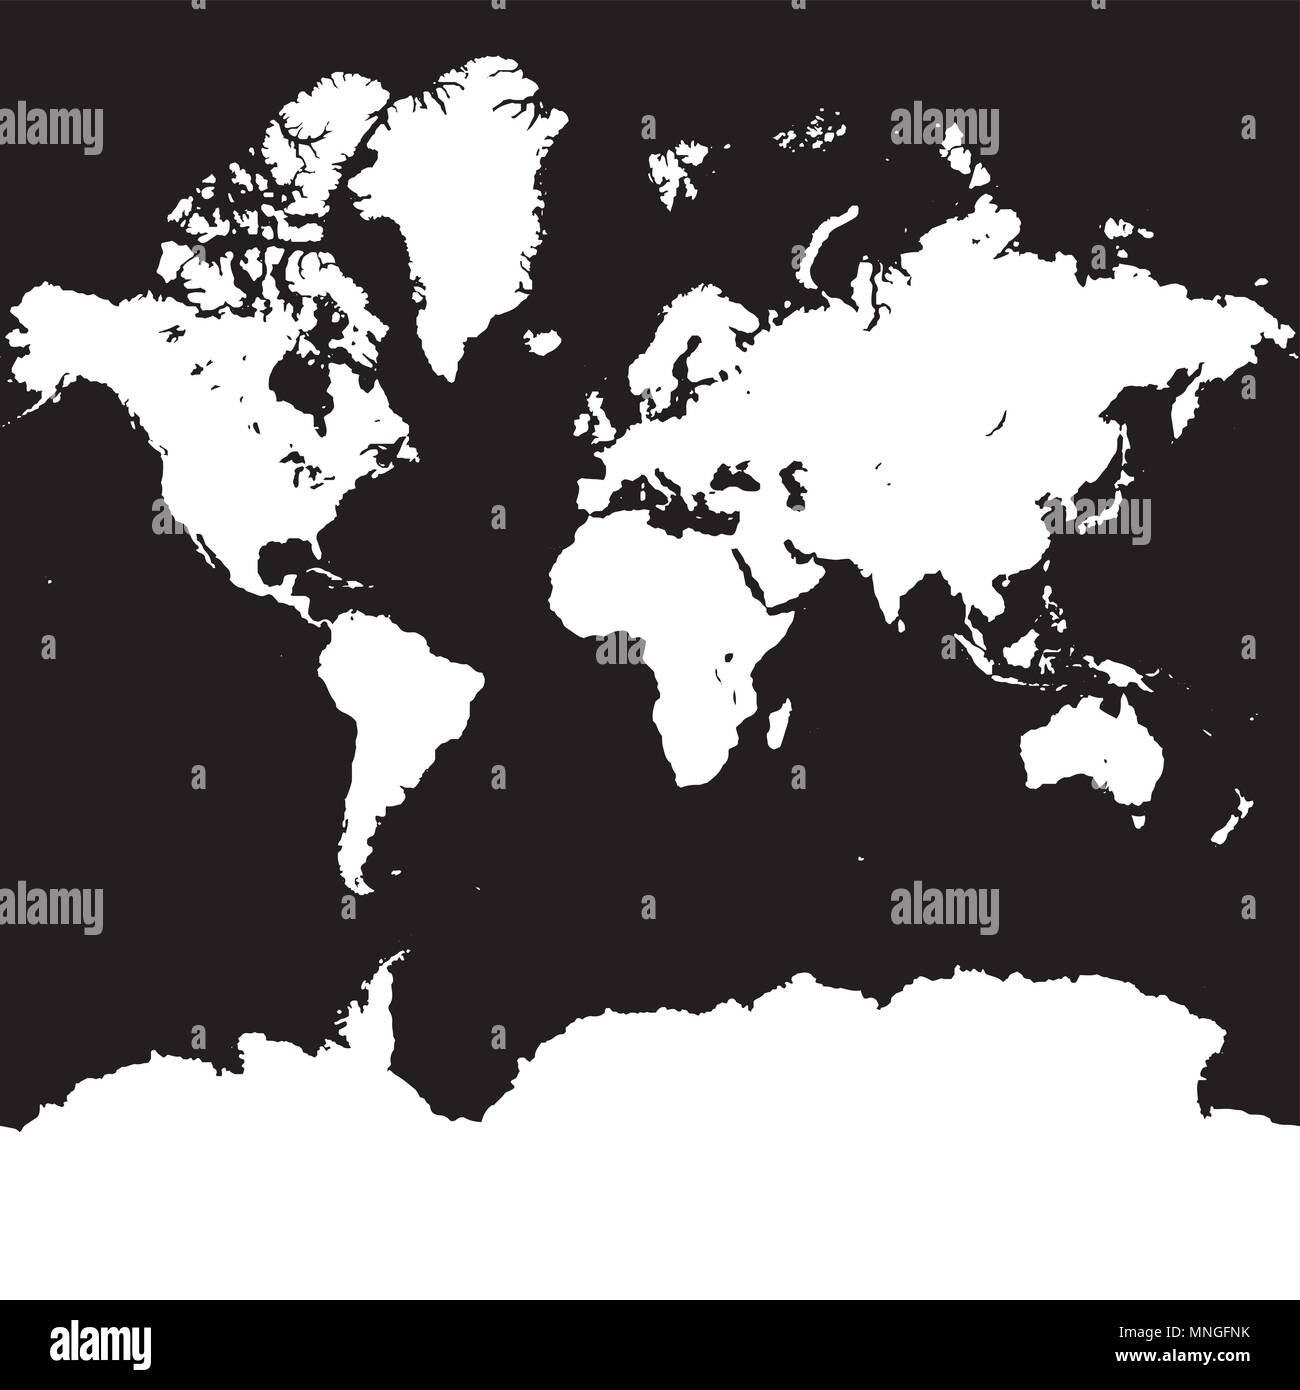 Weltkarte Silhouette auf Platz schwarzer Hintergrund, Vektorkarte mit Antarktis Stock Vektor